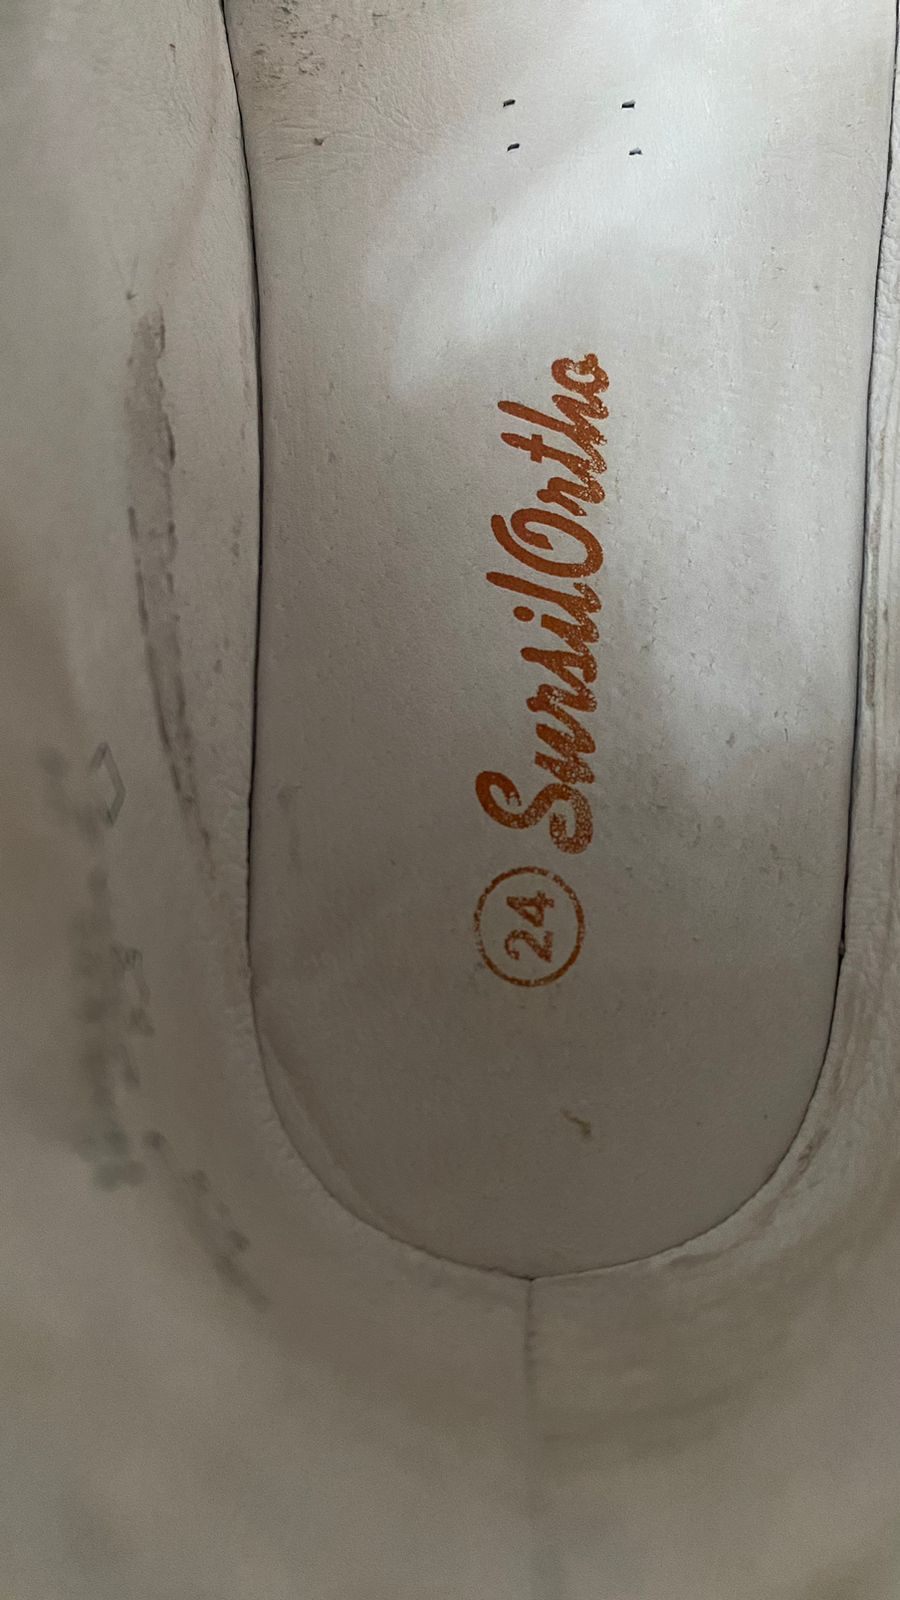 ортопедическая обувь фирмы SursilOrtho, отличное качество